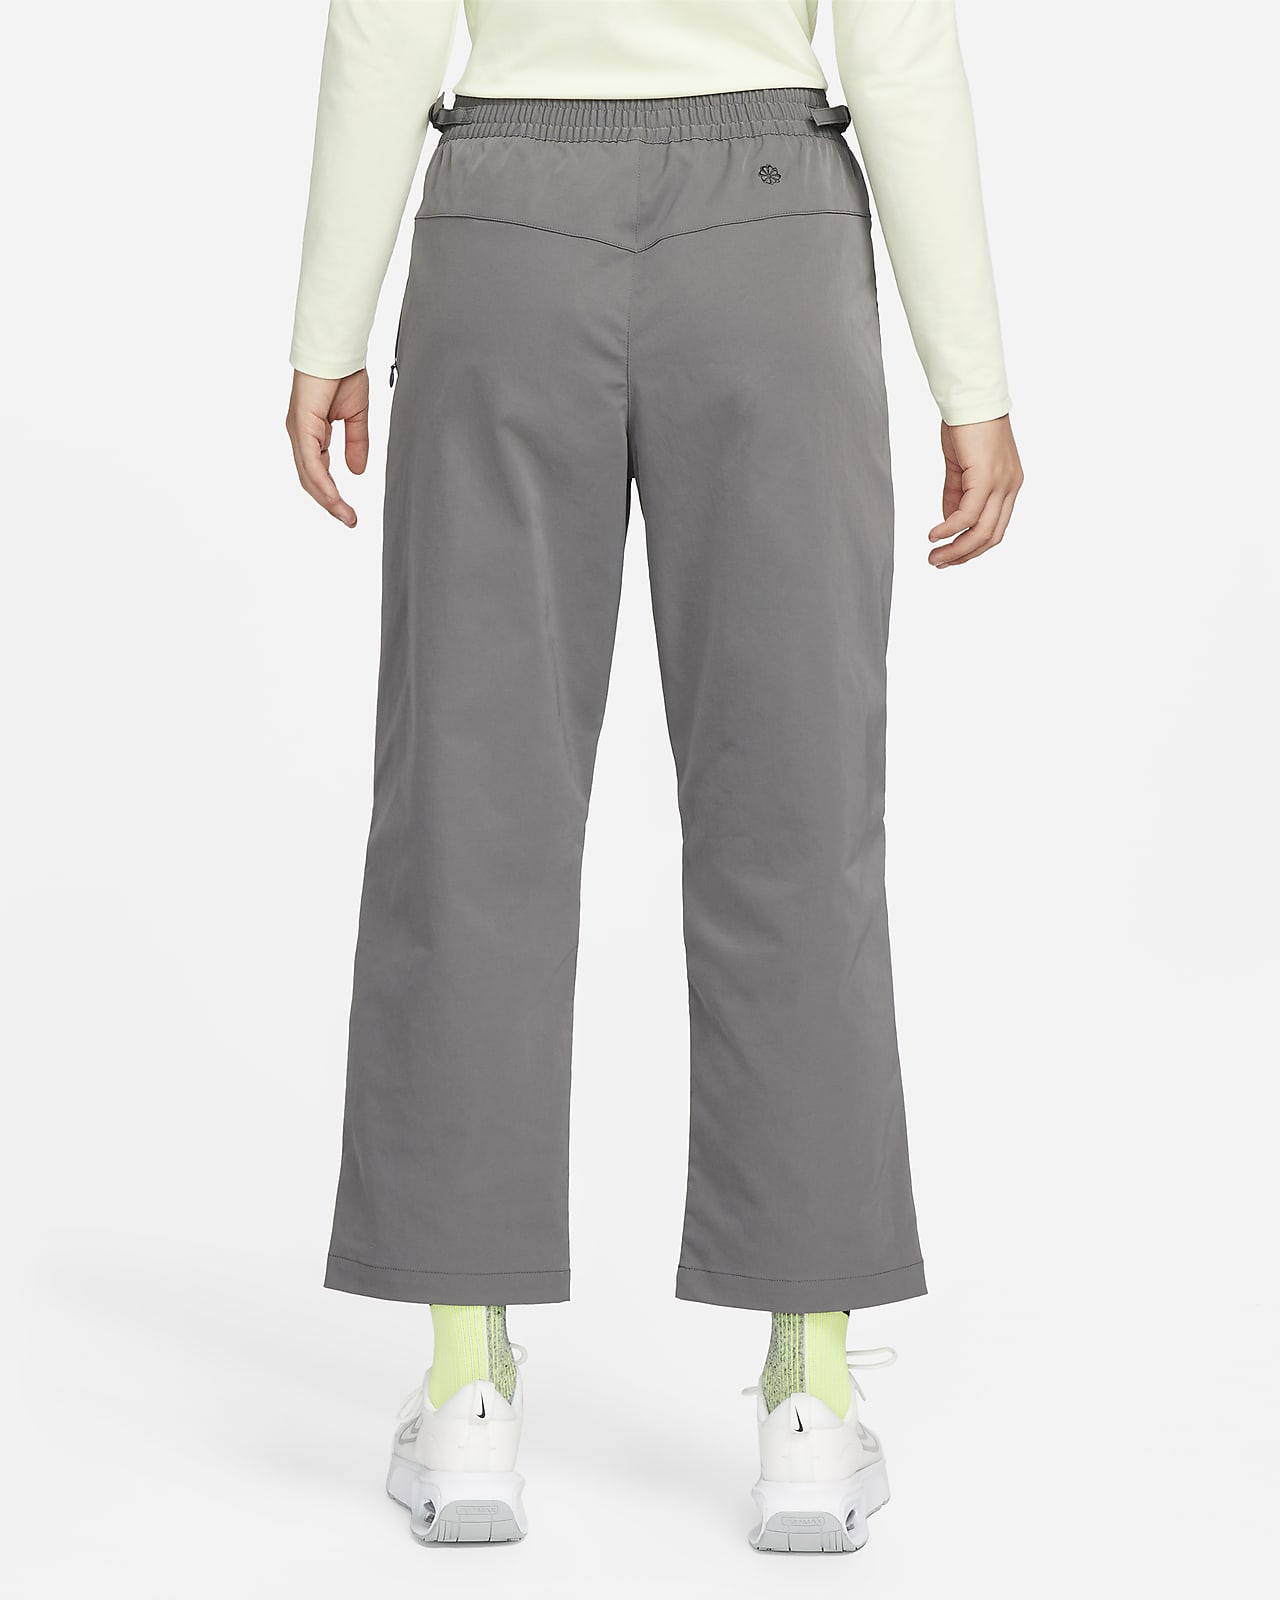 Nike Sportswear Dri-FIT Tech Pack Women's Mid-Rise Woven Pants